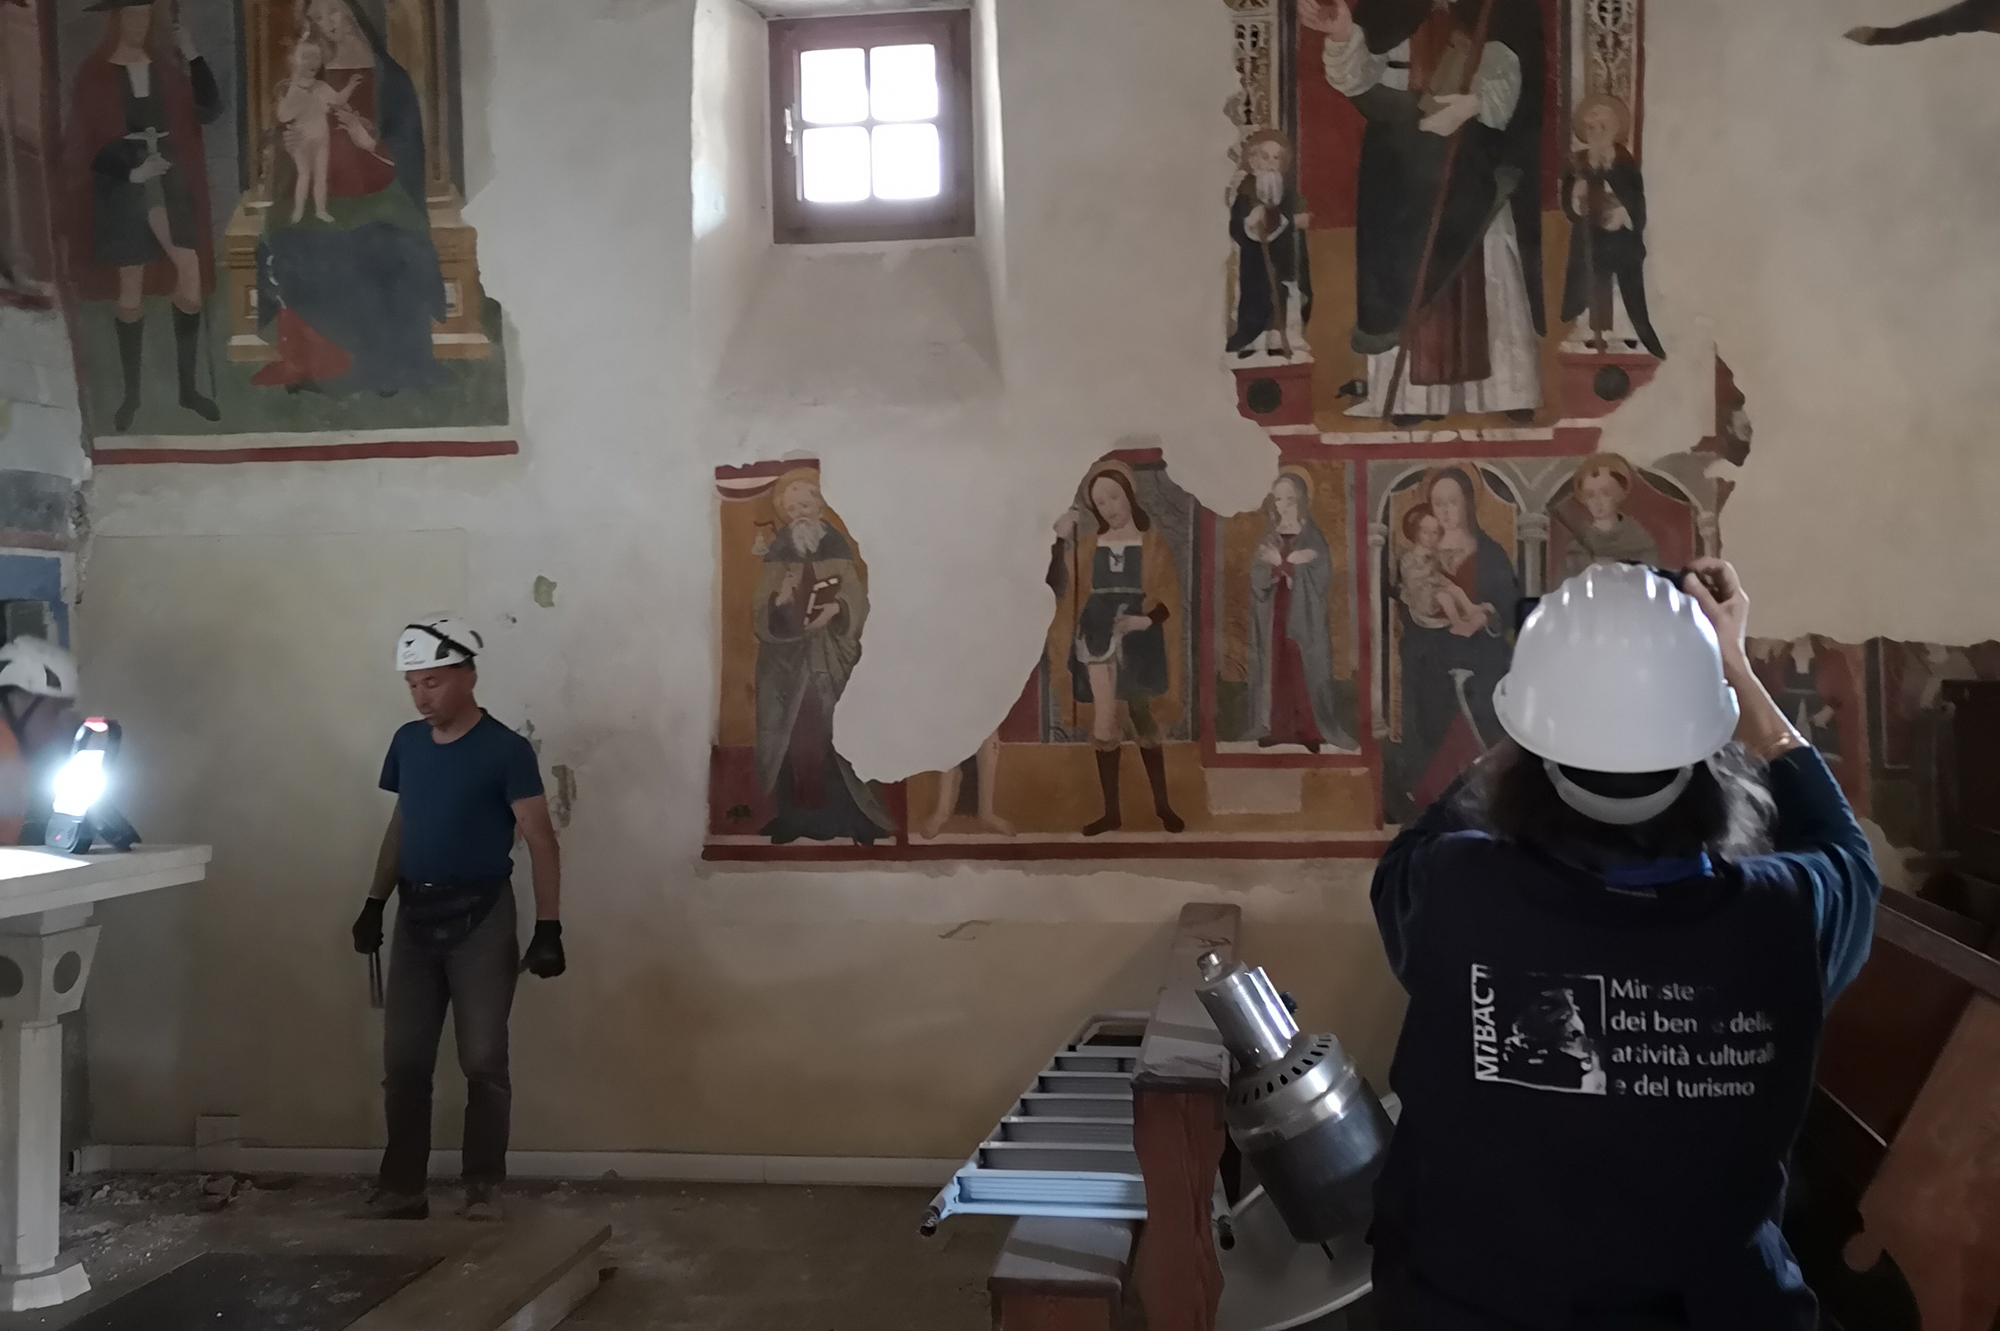 San Giorgio Martire in Terracino. Messa in sicurezza degli affreschi